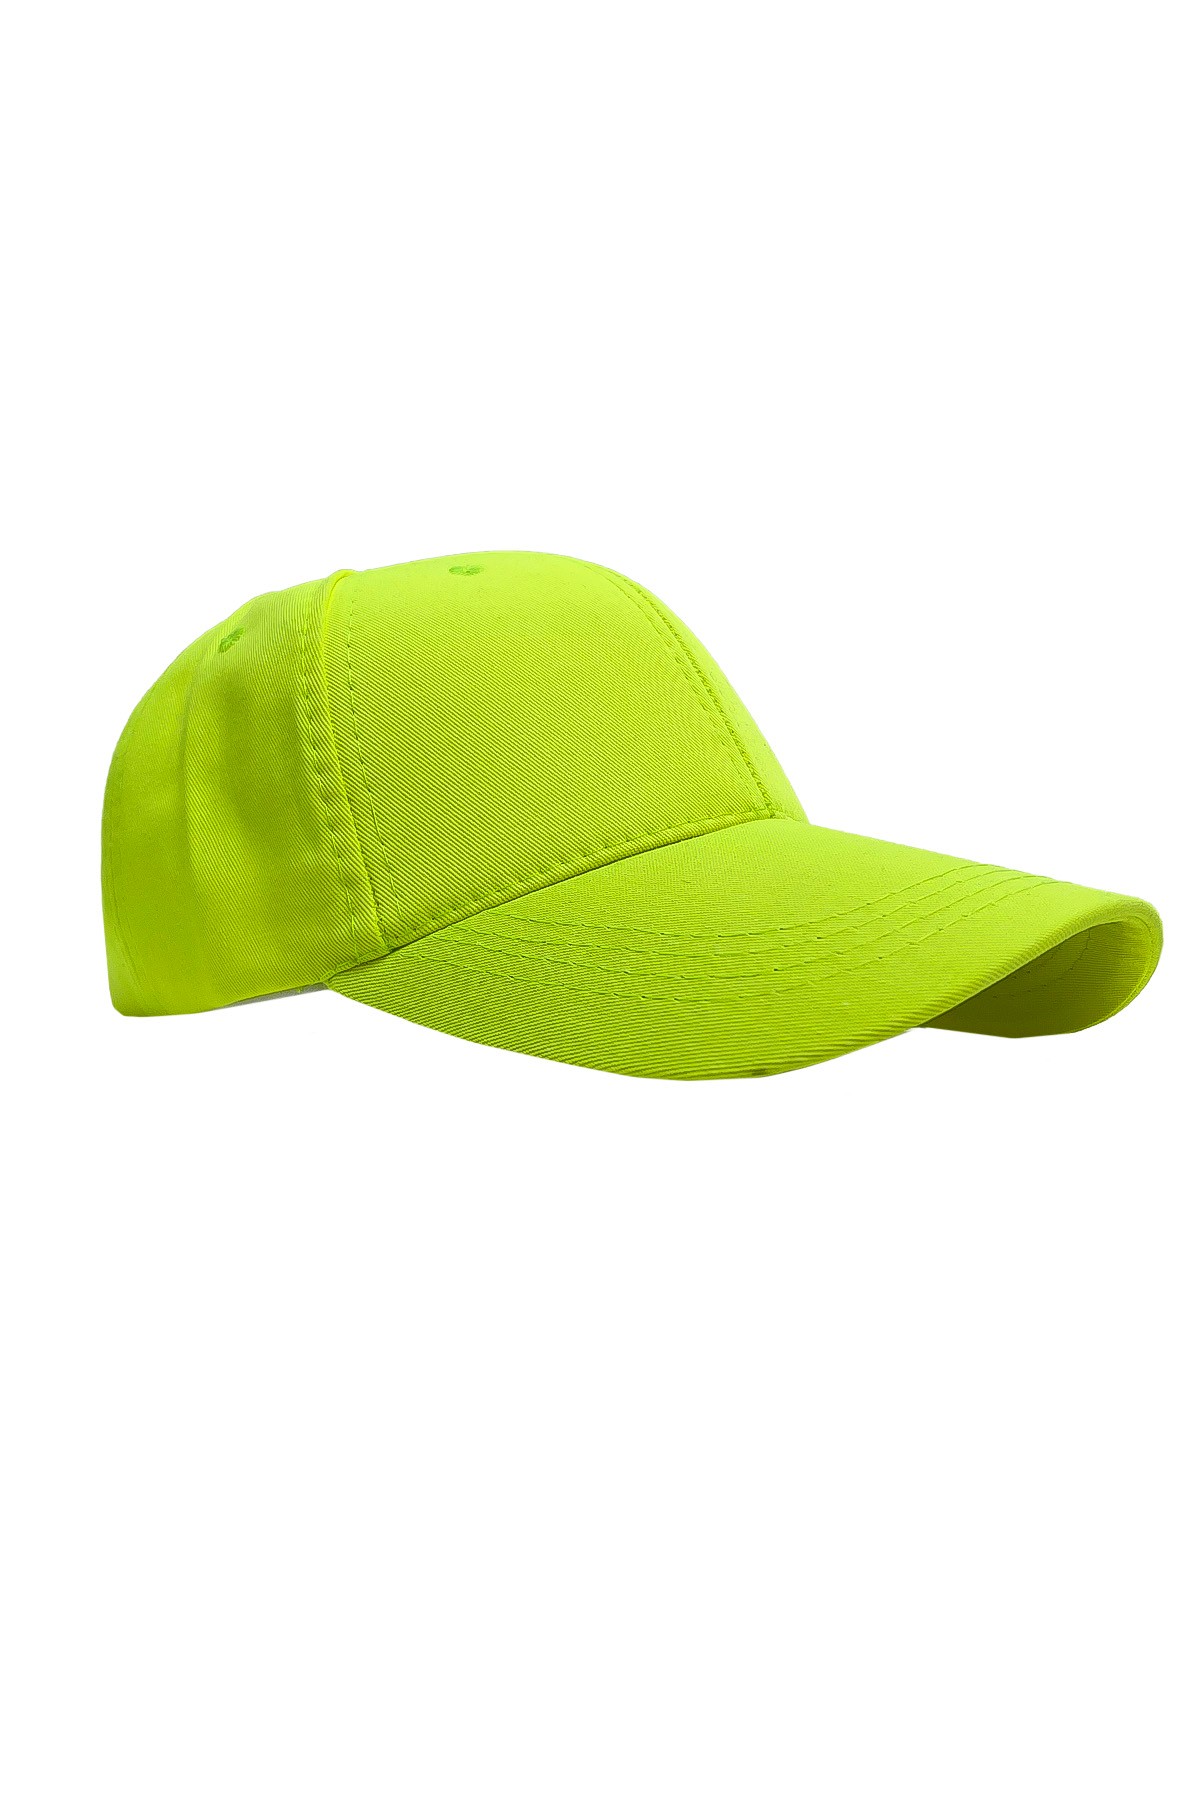 Kleo - قبعة - أخضر نيون